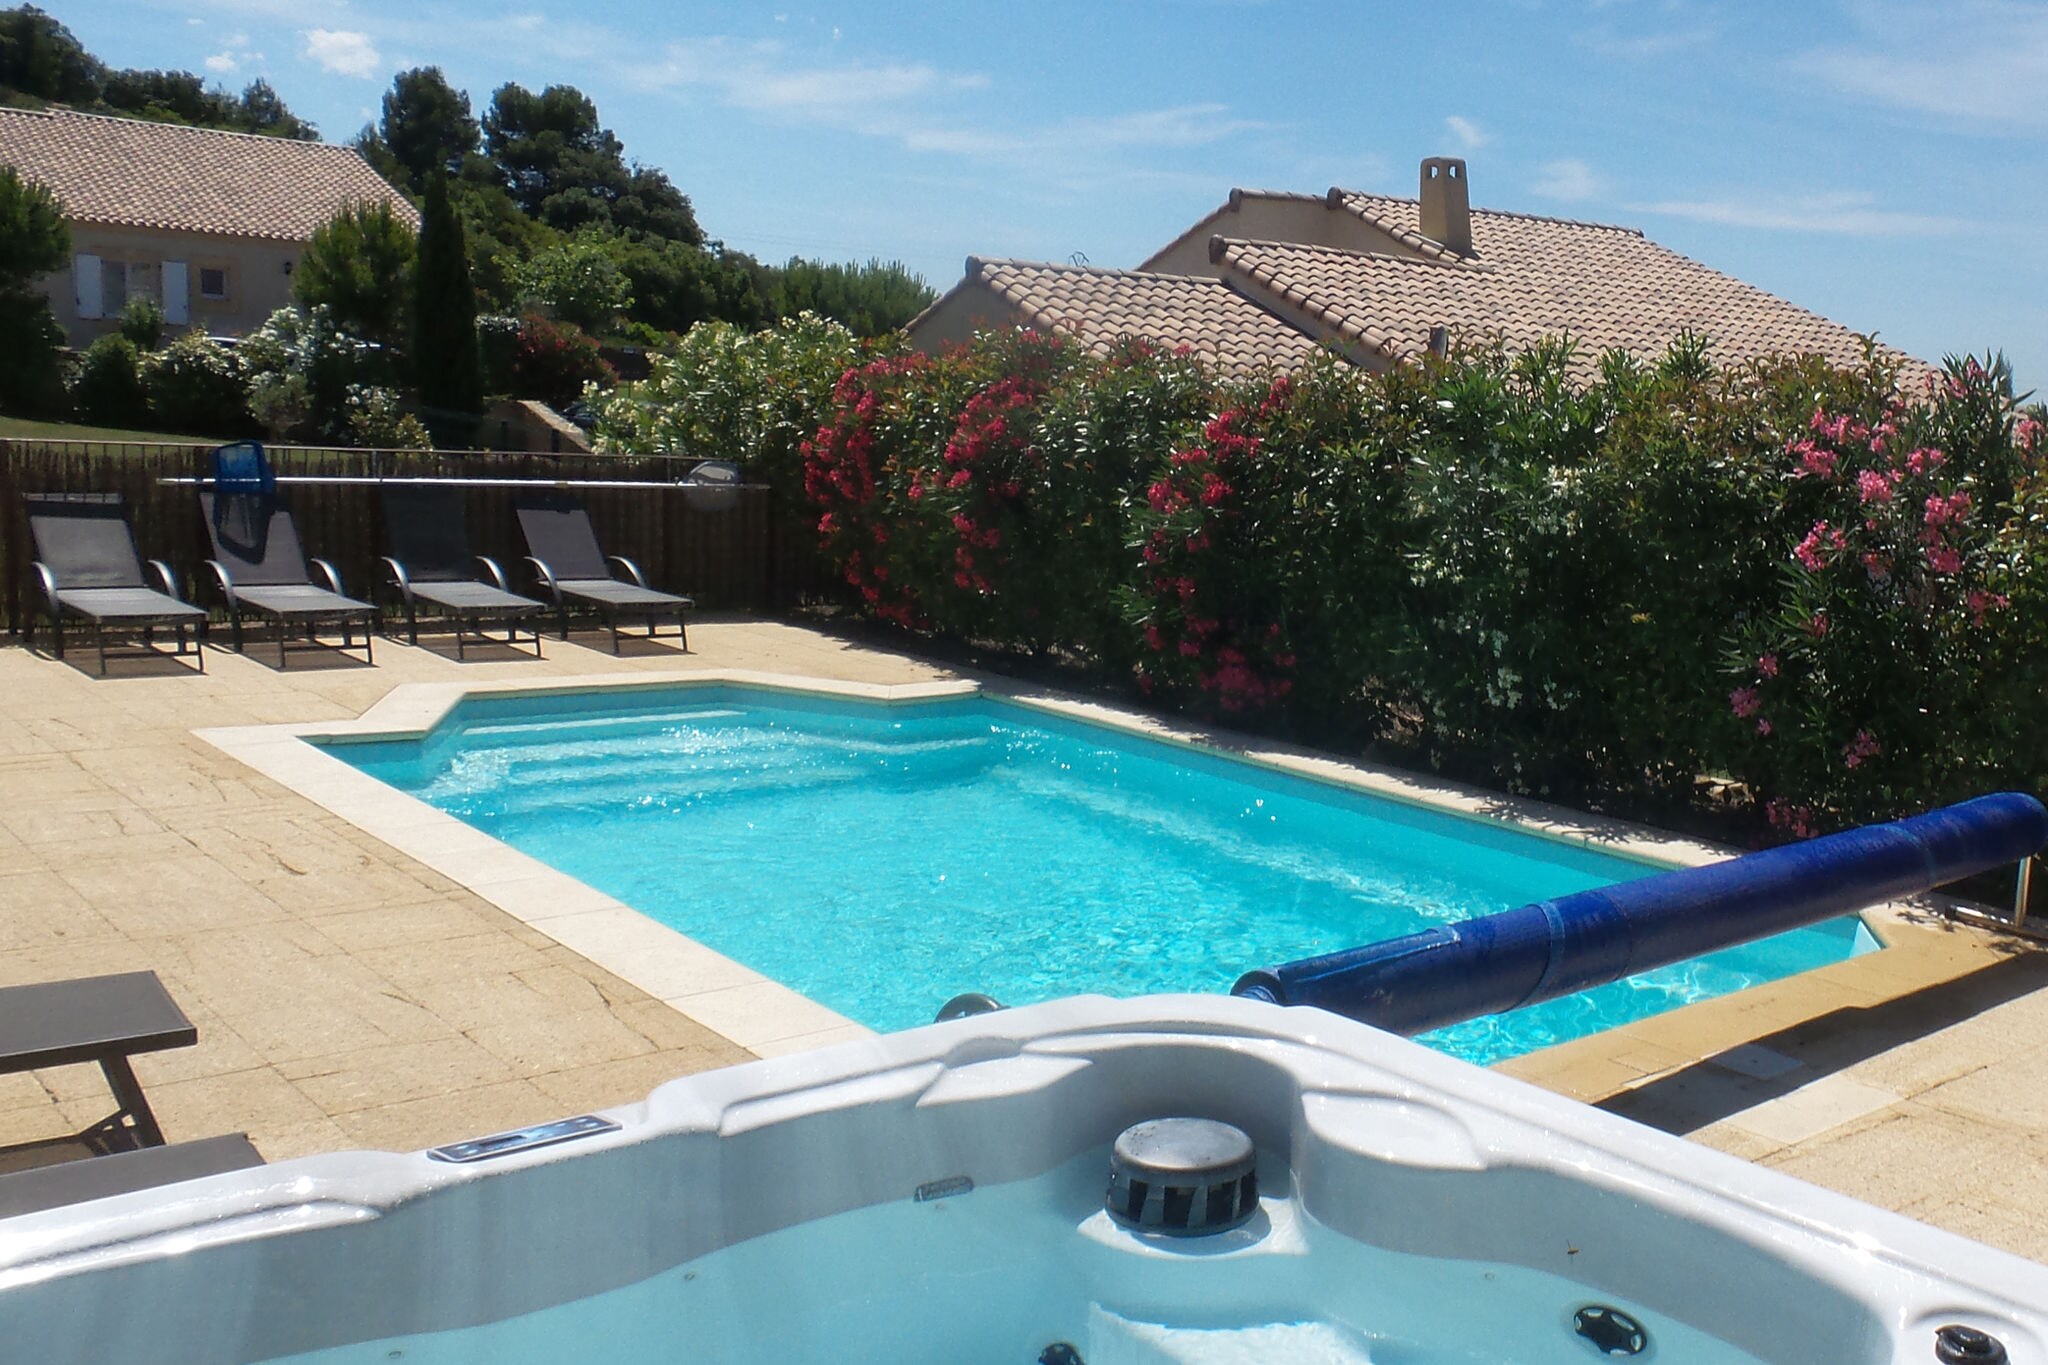 Ruime villa met verwarmd zwembad, jacuzzi, omheinde tuin en prachtig uitzicht over de wijngaarden